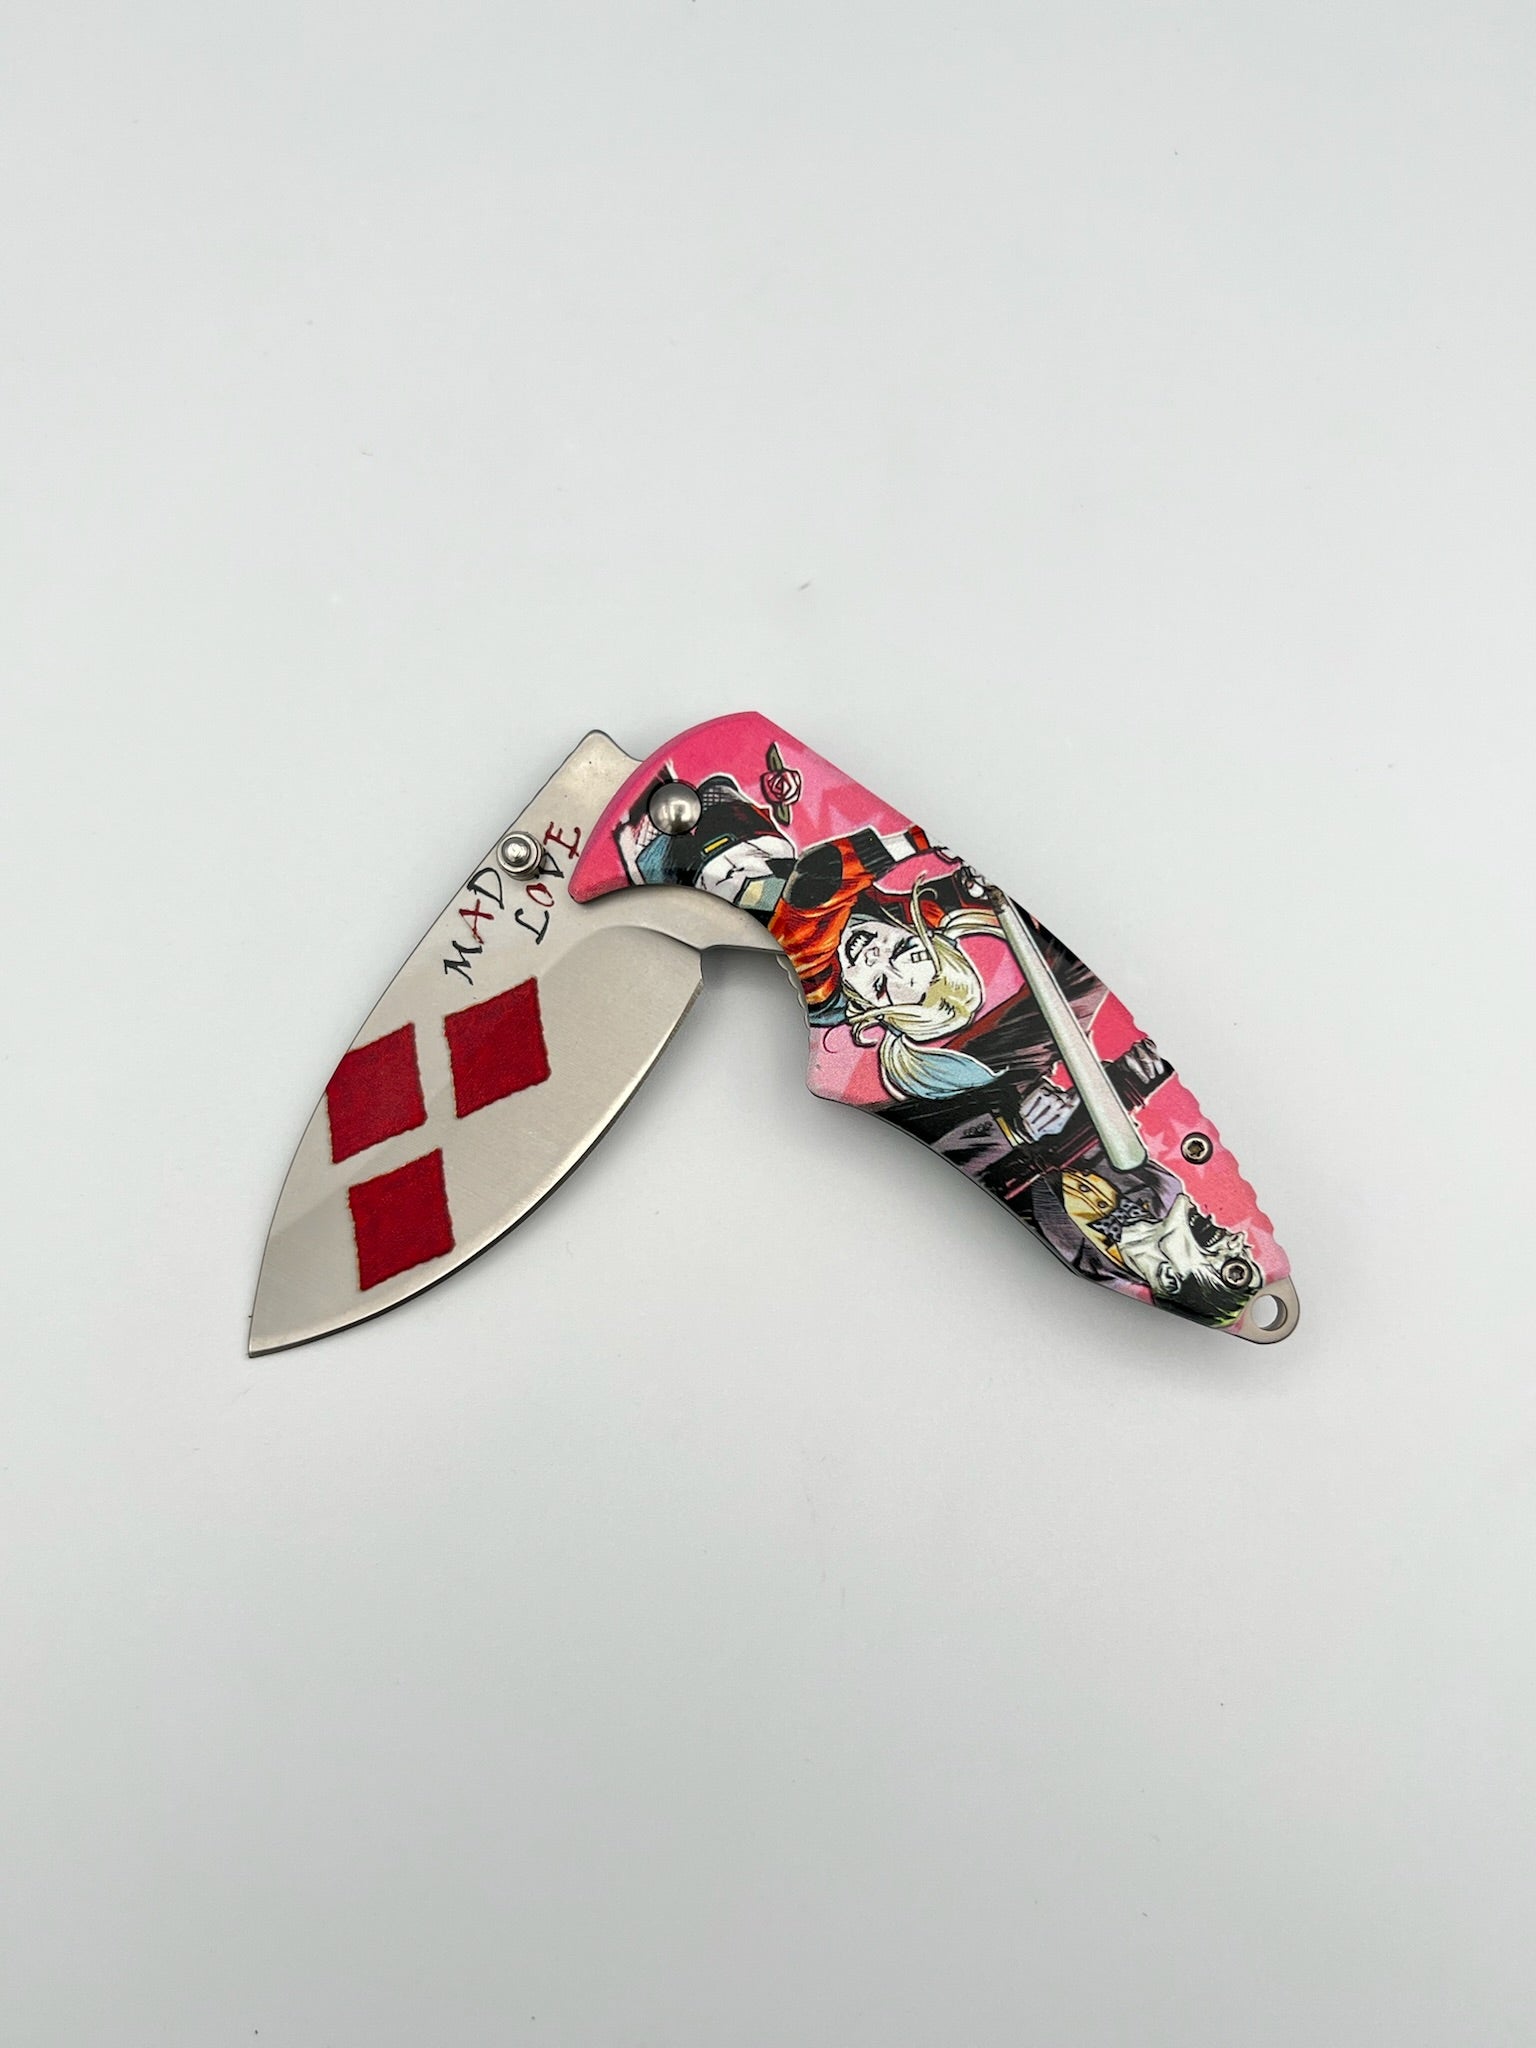 Mad Love Pocket Knife - Blades For Babes Folding Blade